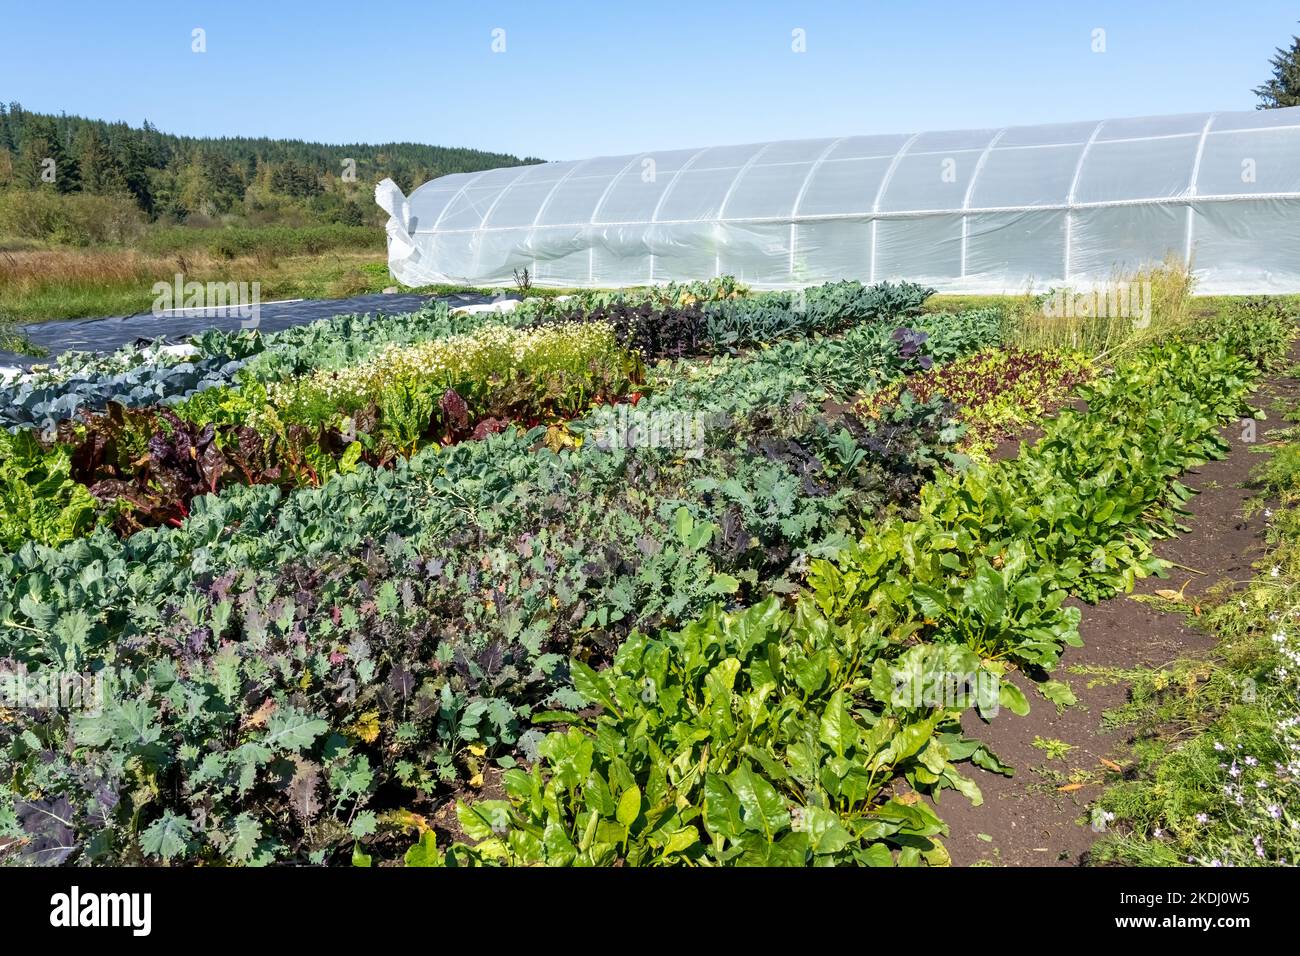 Chimacum, Washington, EE.UU. Campo delante de un invernadero comercial, el cultivo de una variedad de cultivos, incluyendo col rizada, acelga suiza, hojas verdes collard, lettuc Foto de stock